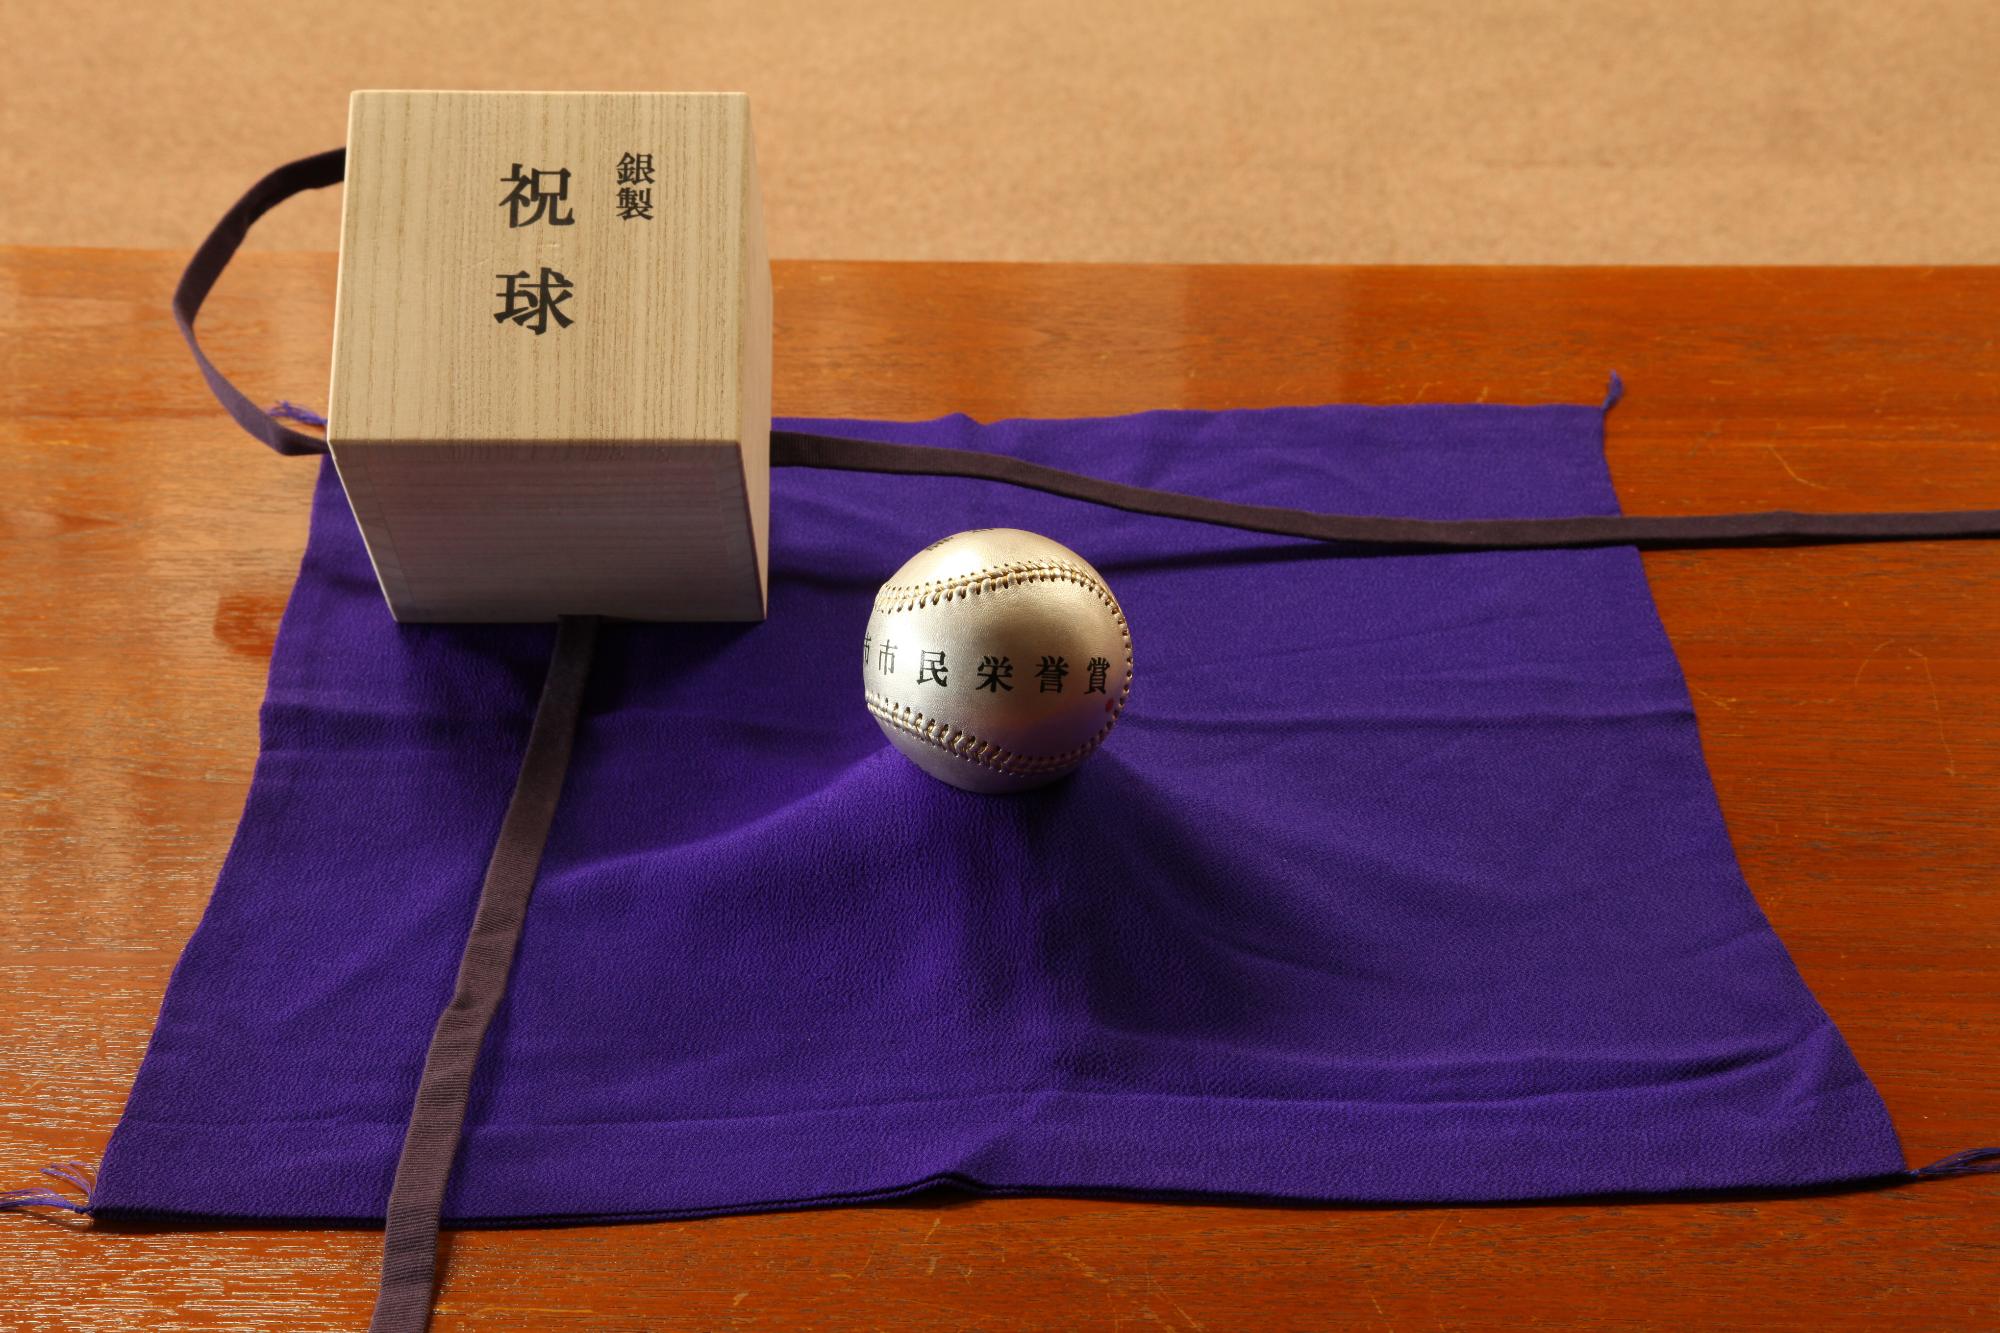 祝球と書かれた木箱と銀色のボールが、紫の布の上に置かれている写真